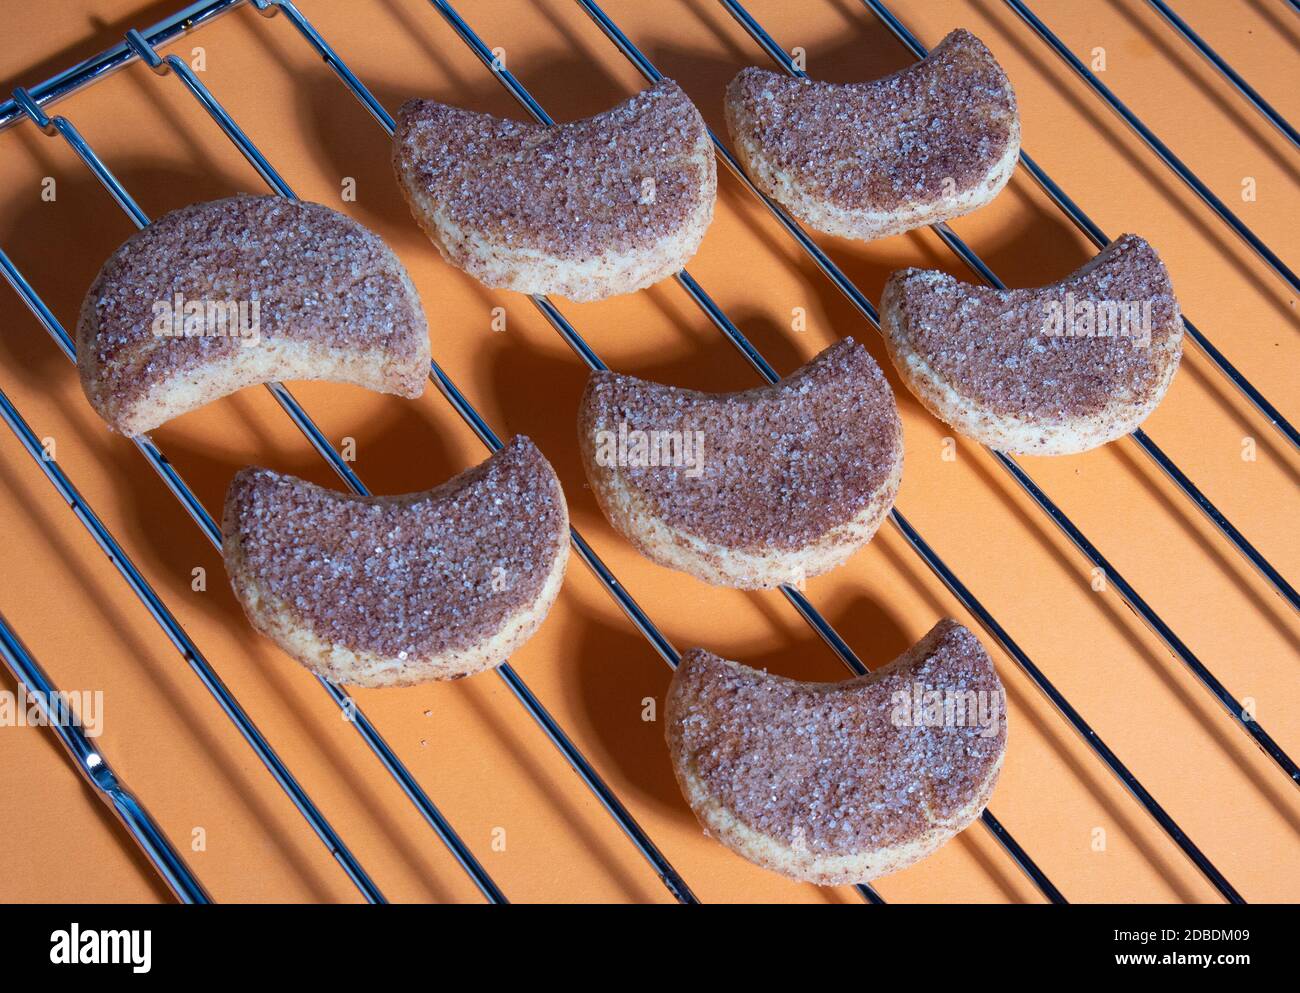 Un certain nombre de biscuits confits semilunar tentants posés sur une grille métallique, ombres dures Banque D'Images